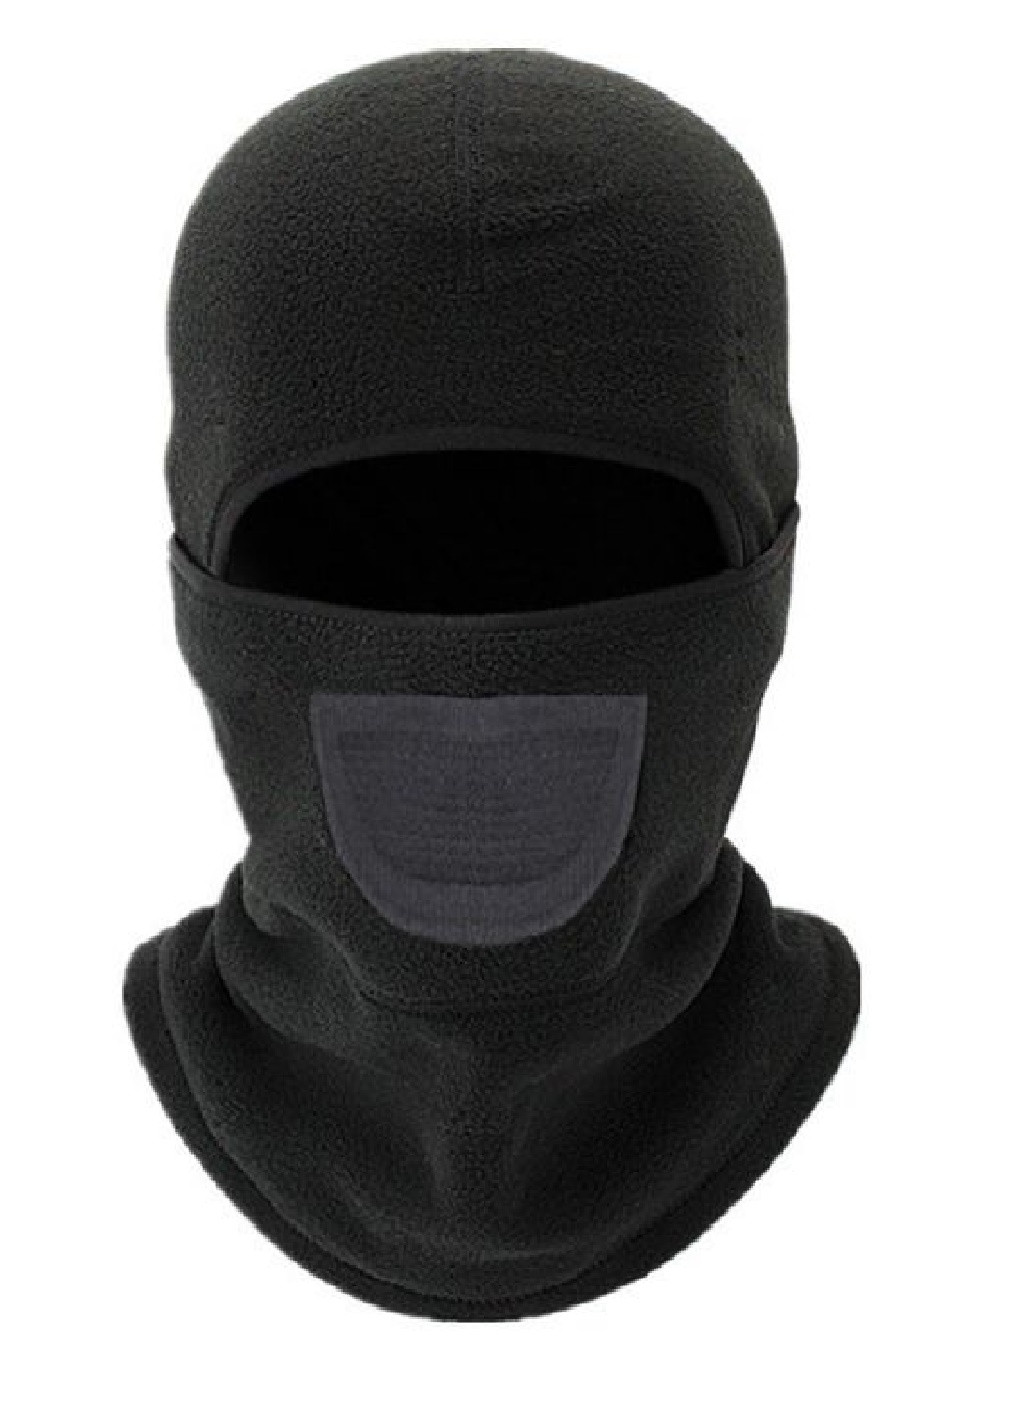 Francesco Marconi термо маска флисовая балаклава зимний бафф шарф подшлемник лыжная шапка (472814-prob) черная однотонный черный кэжуал флис производство - Китай